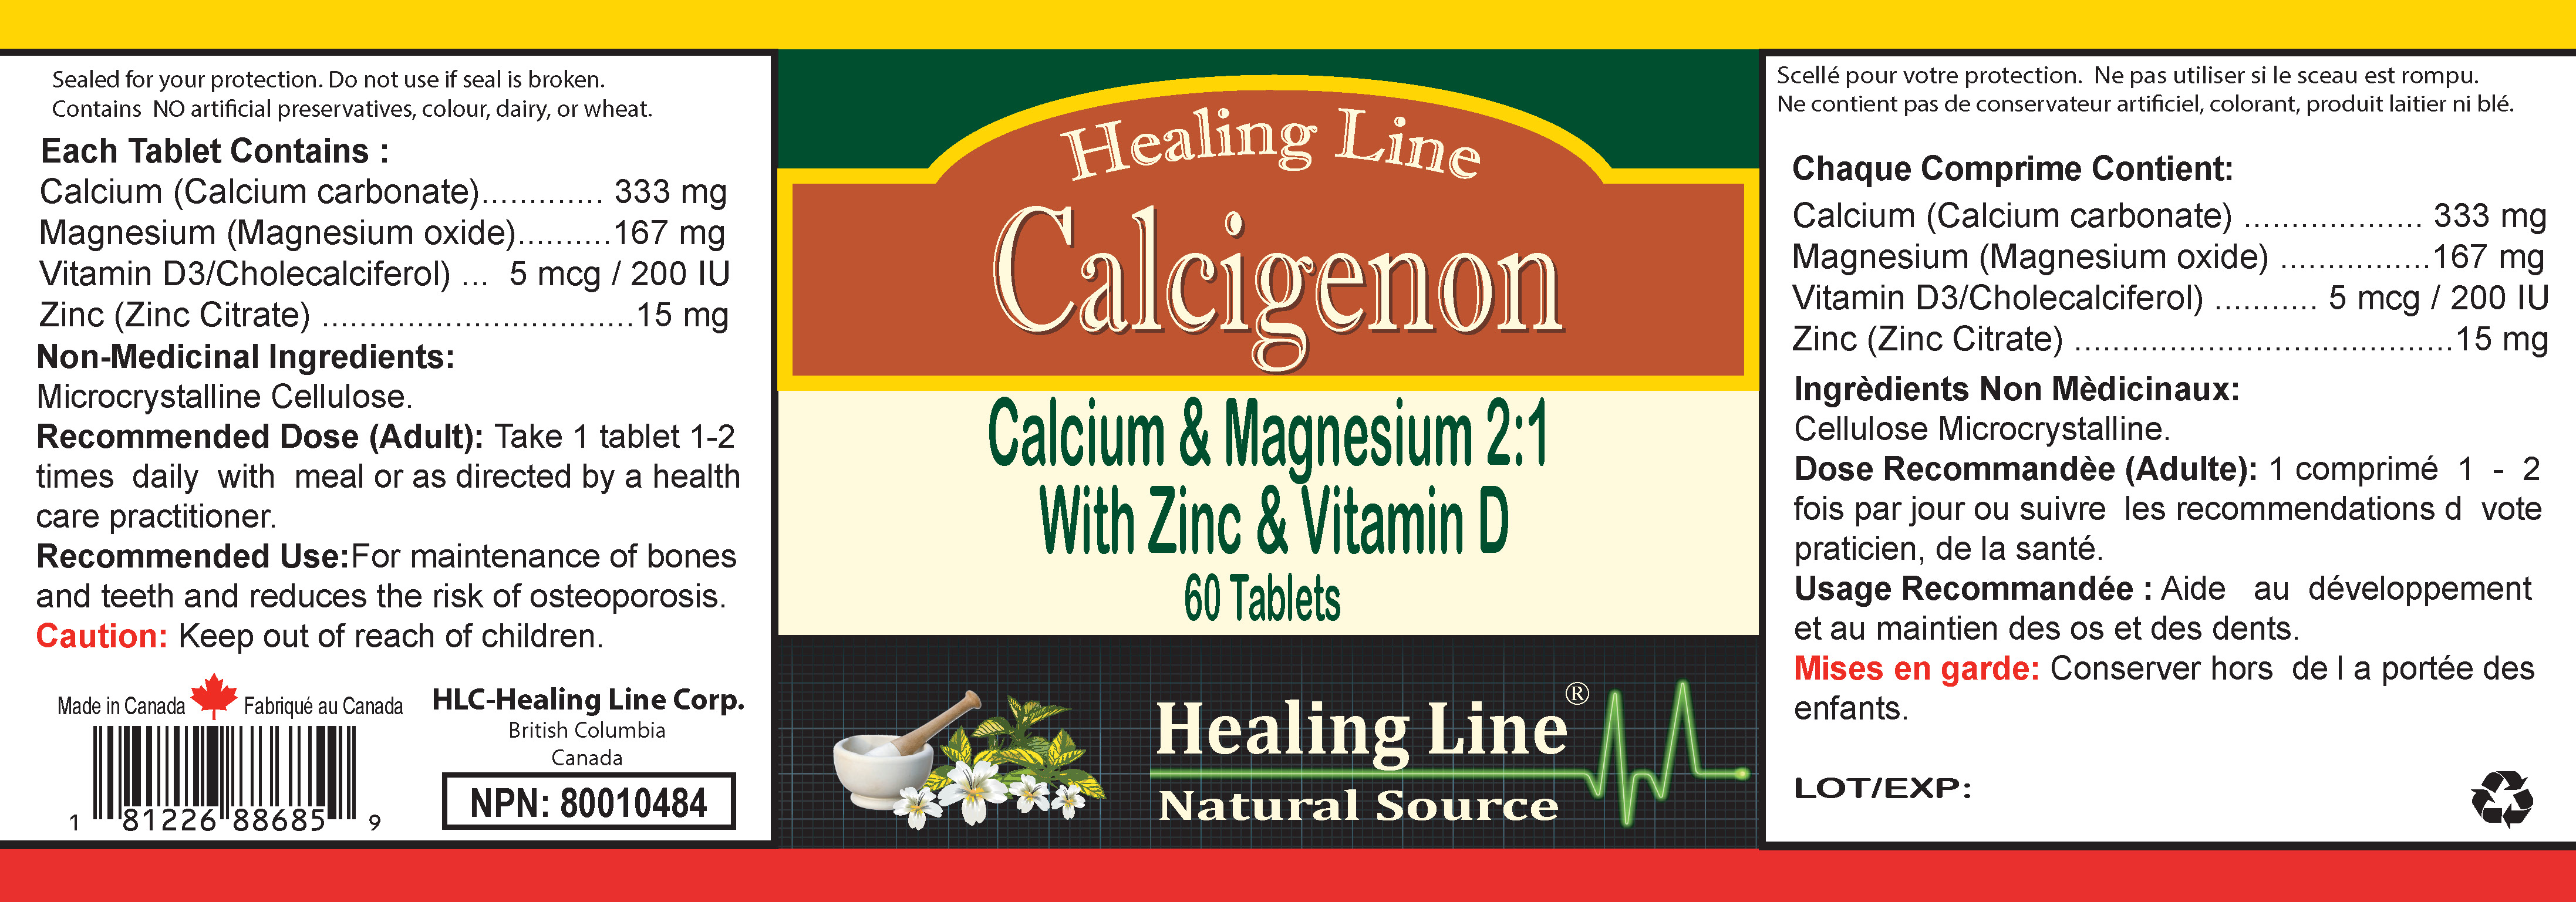 Calcigenon175cc new